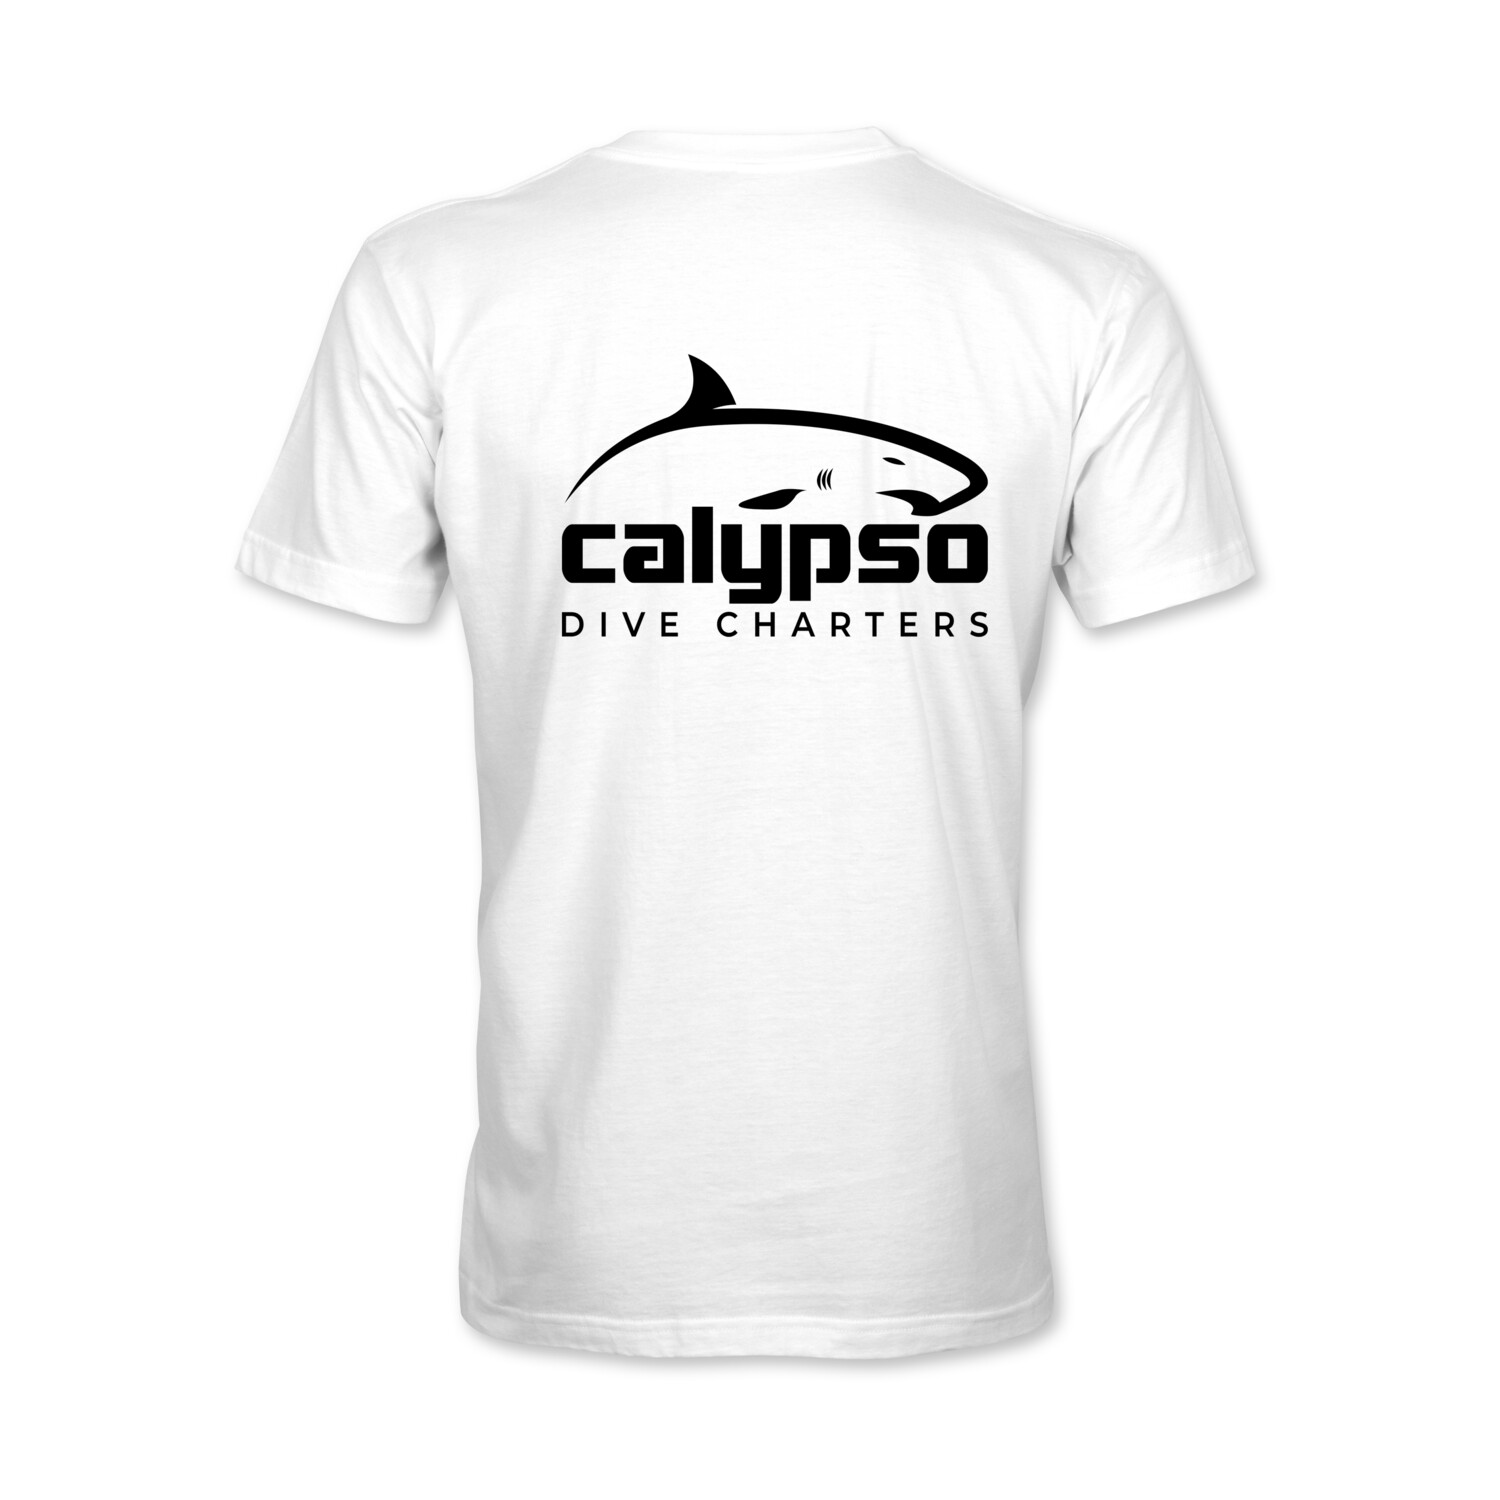 Calypso Shark Diver "Calypso" Short-Sleeve Unisex T-Shirt